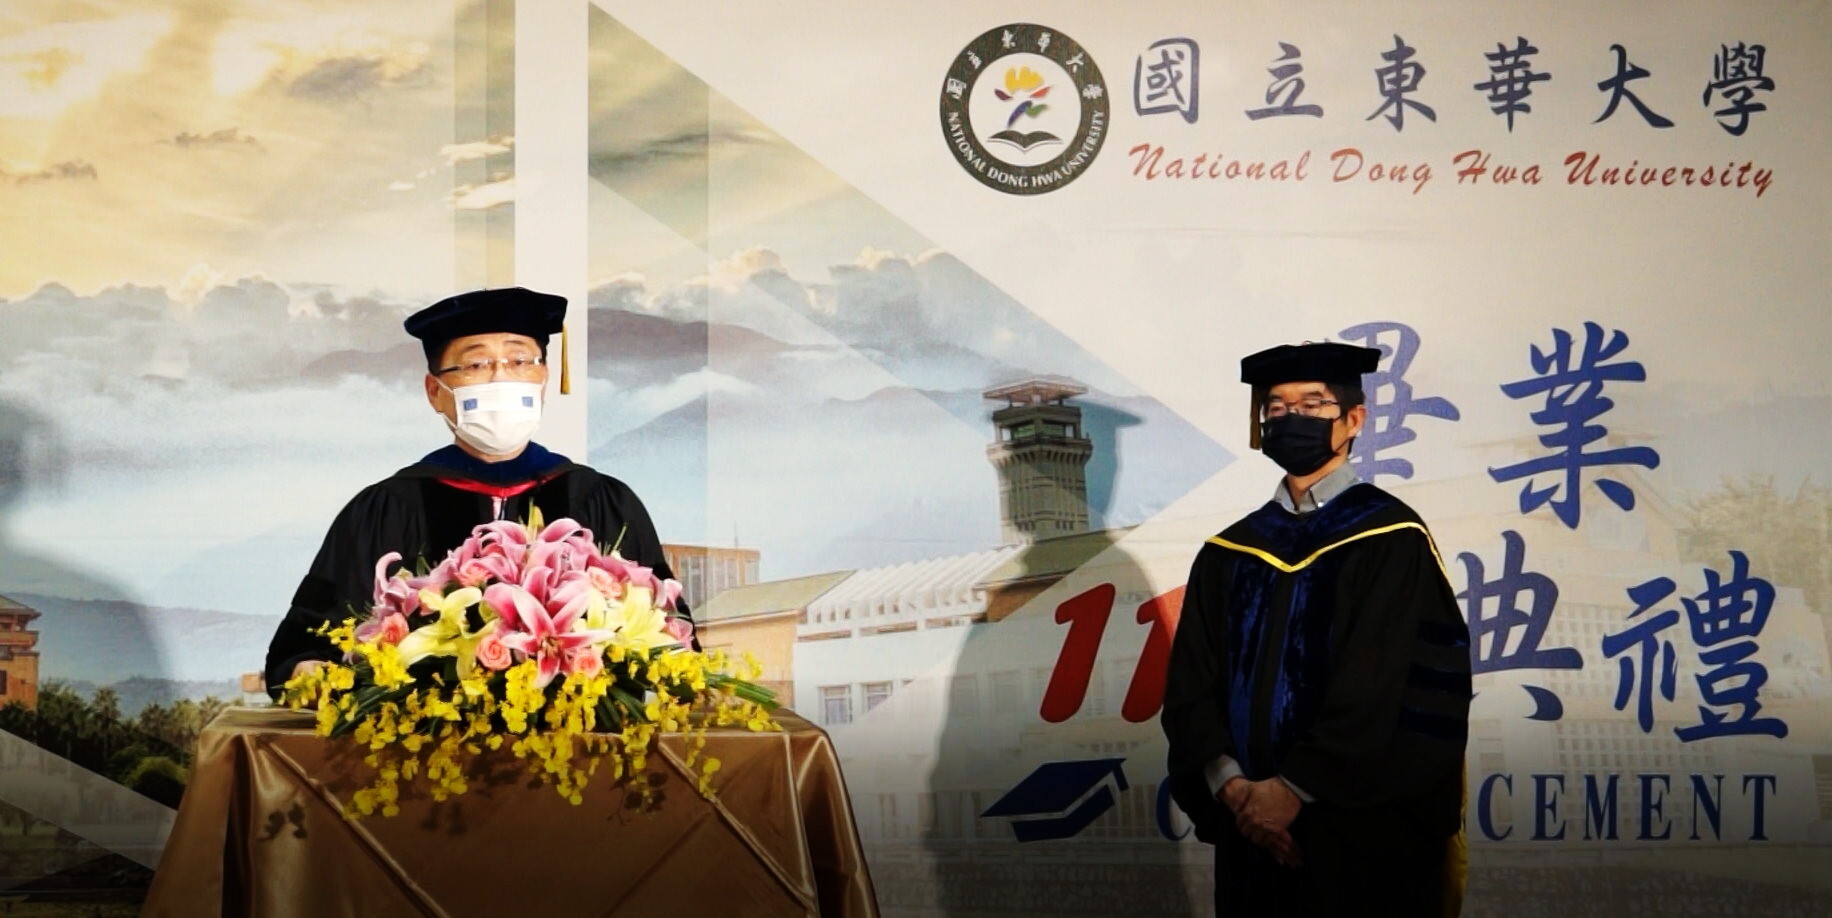 趙涵㨗校長在教務長見證下宣佈依大學法授予畢業生學位。